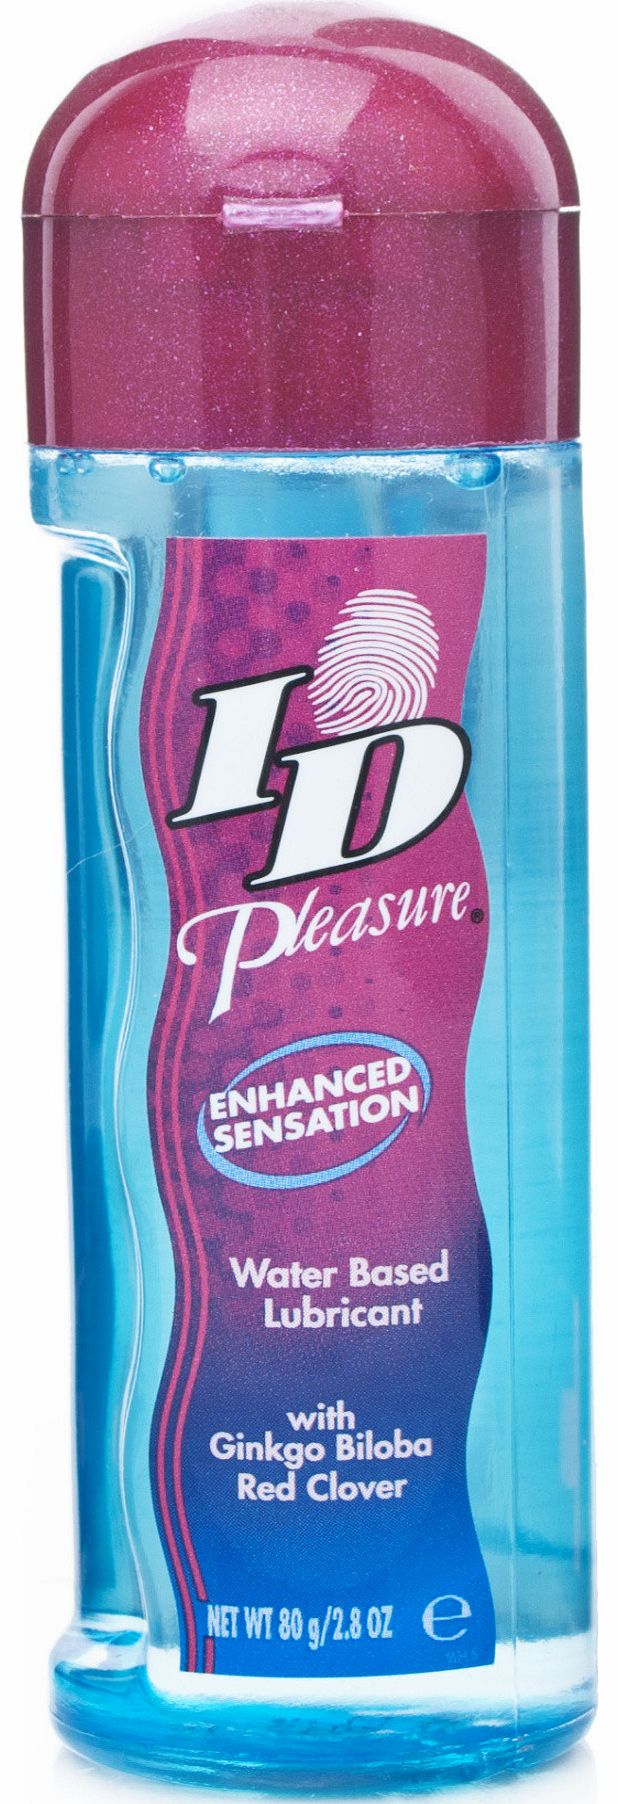 ID Pleasure Lubricant